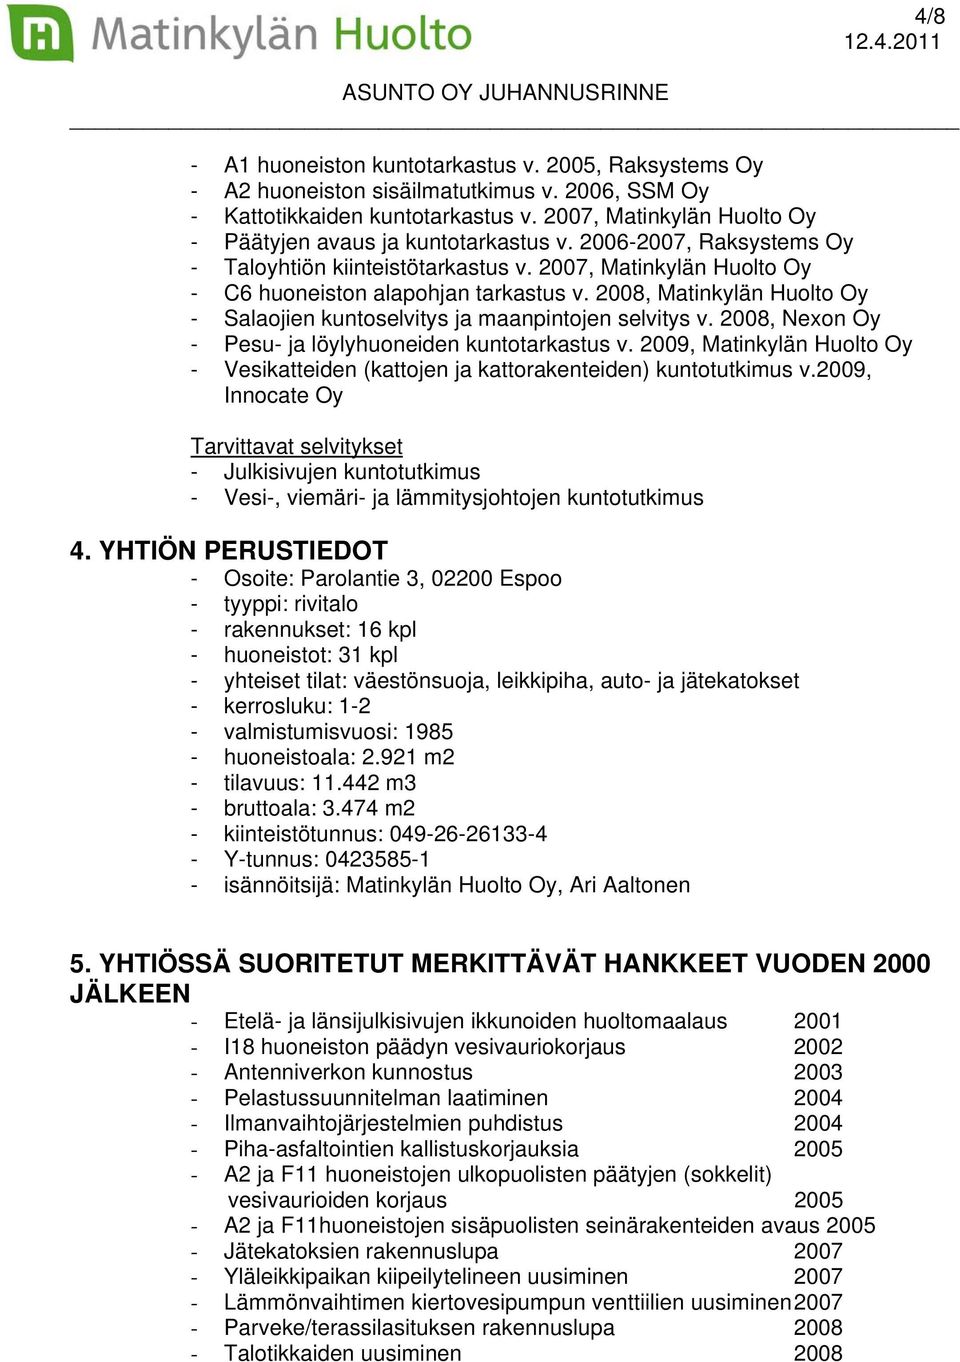 2008, Matinkylän Huolto Oy - Salaojien kuntoselvitys ja maanpintojen selvitys v. 2008, Nexon Oy - Pesu- ja löylyhuoneiden kuntotarkastus v.